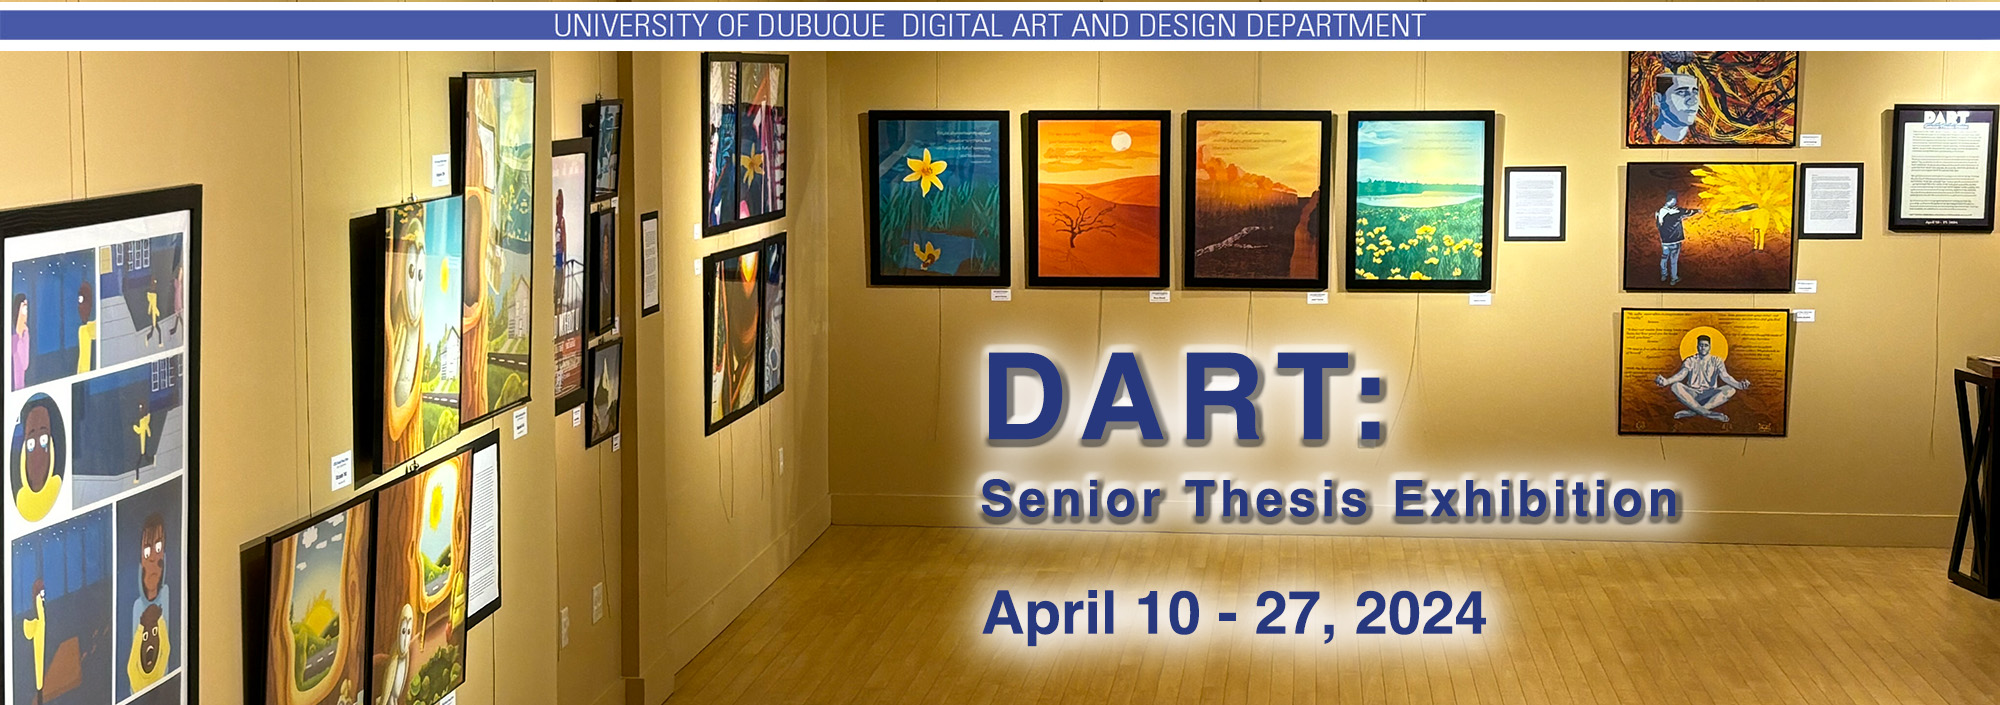 DART: Senior Thesis Exhibition